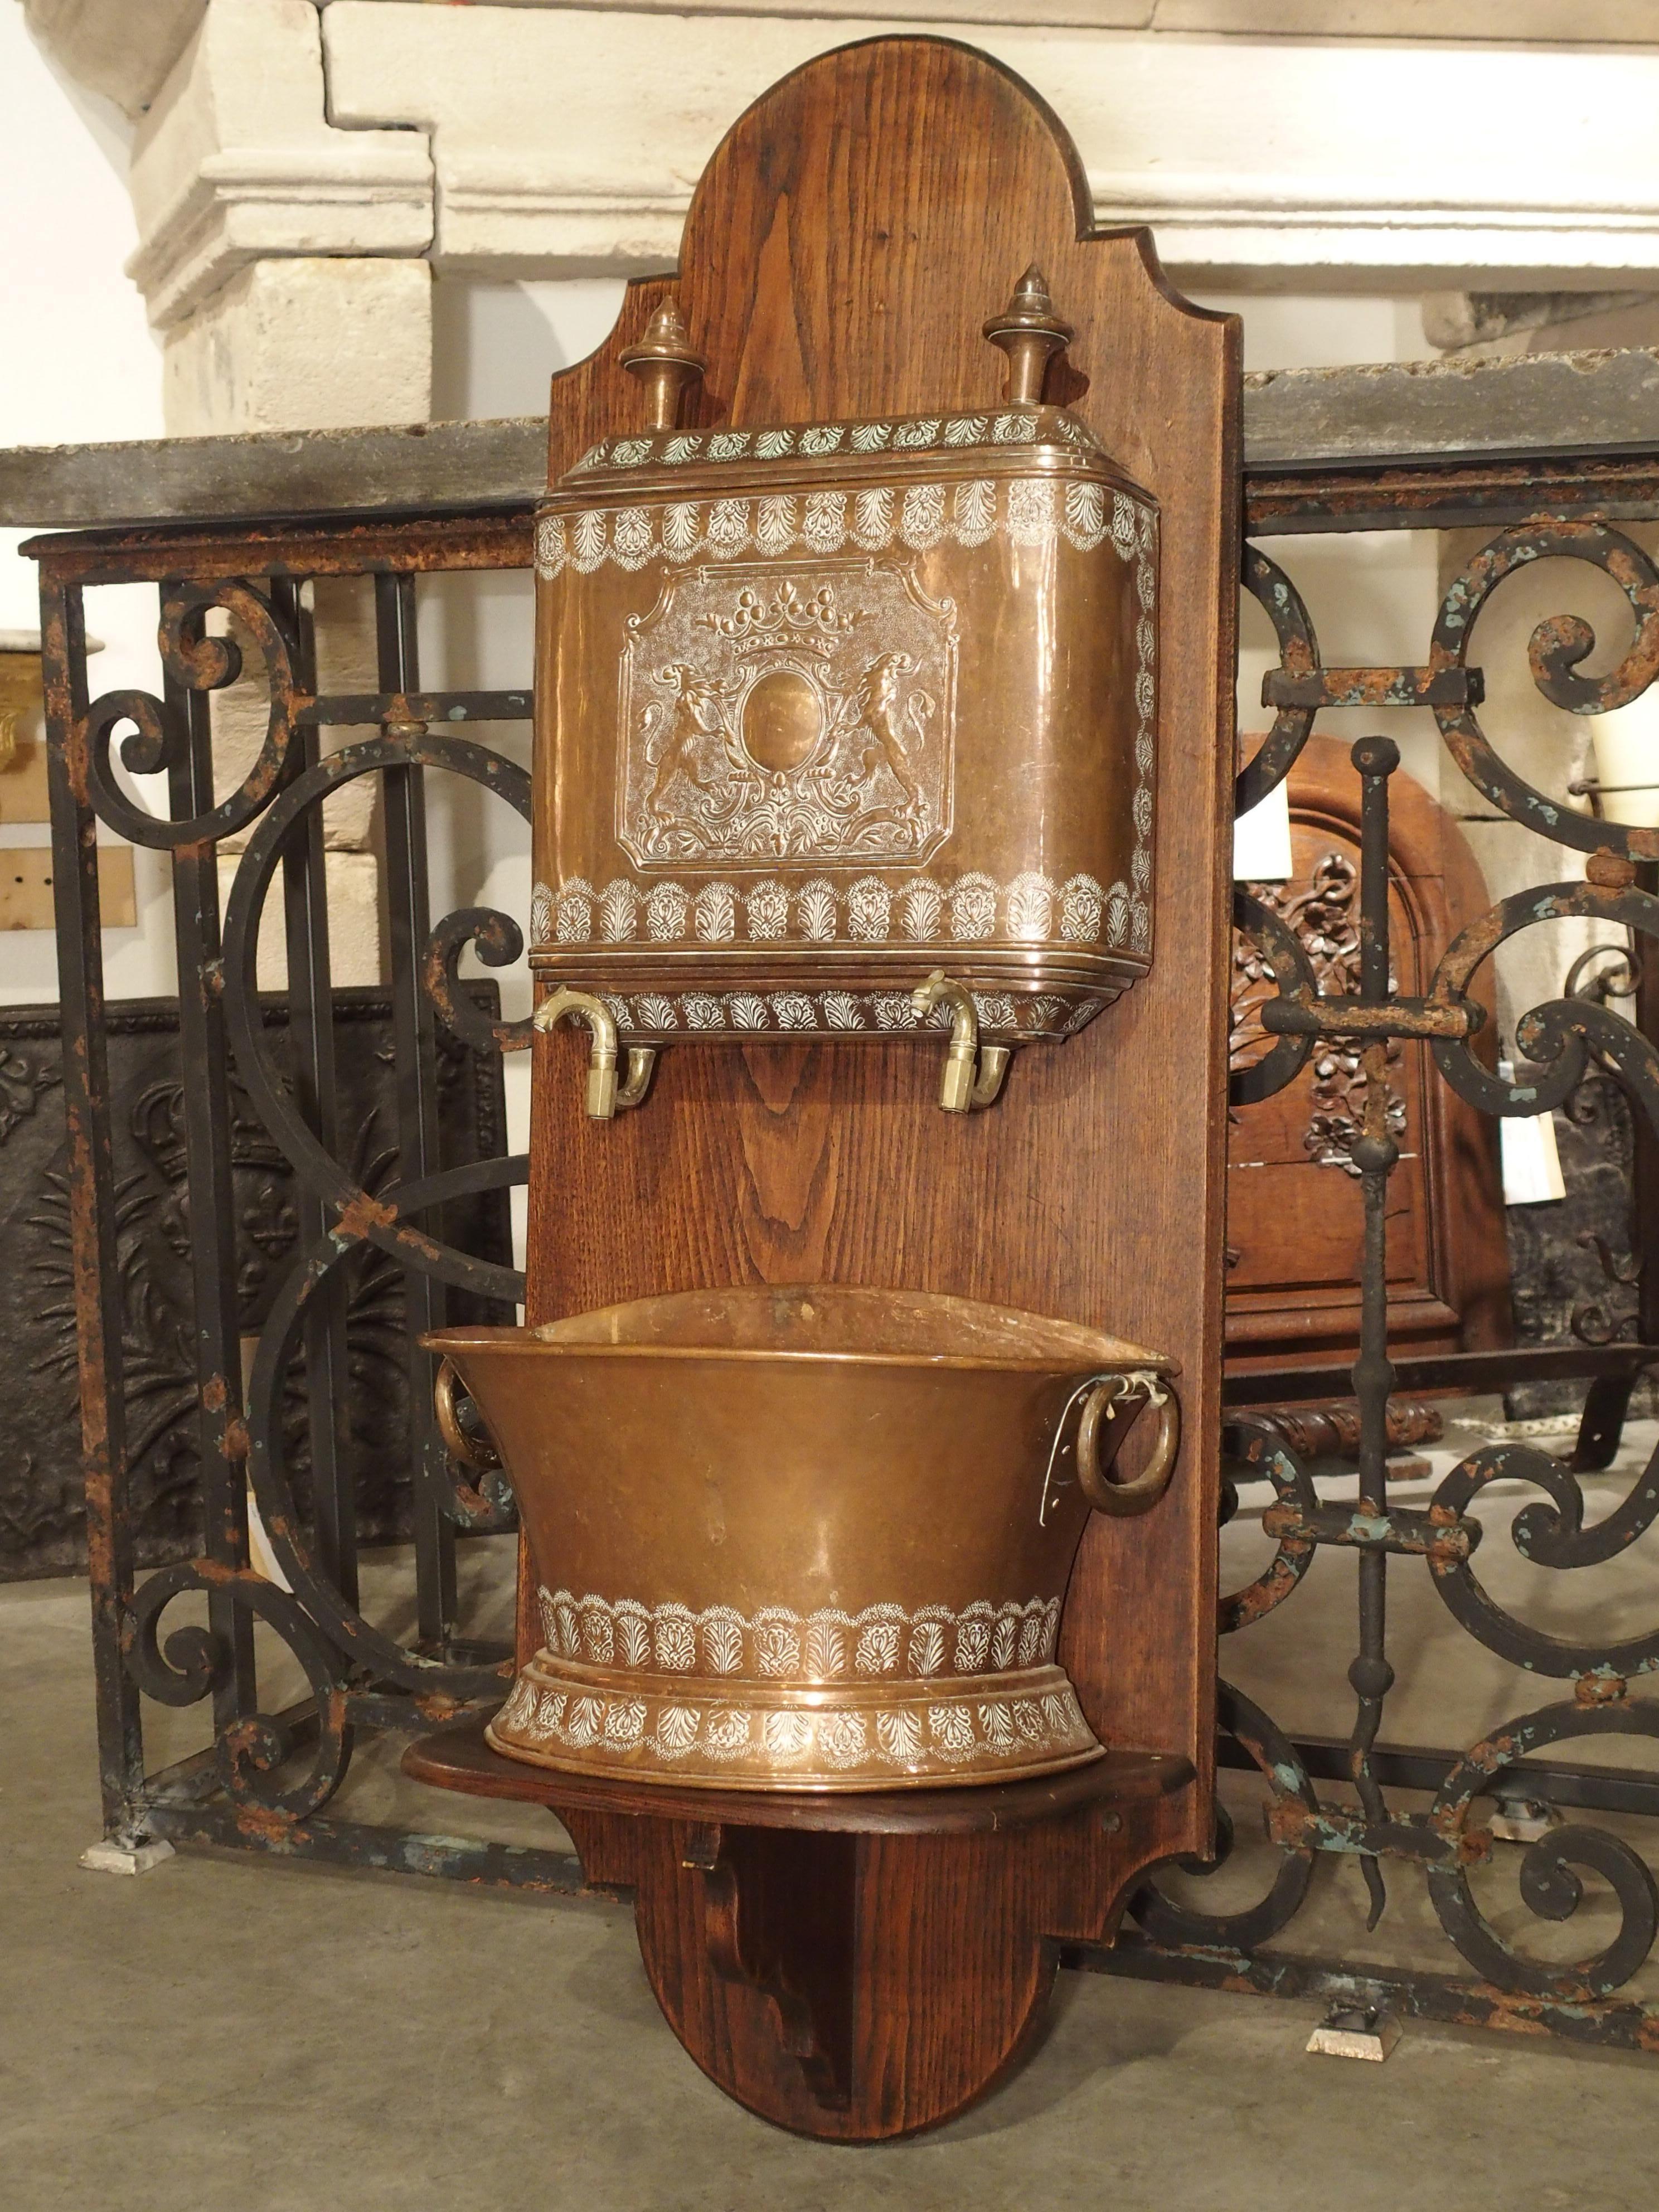 Ce lavabo en cuivre repoussé très travaillé du XIXe siècle sur un support en bois sculpté présente un blason sur le devant du réservoir supérieur où se trouve l'eau. Deux robinets en bronze auraient permis à l'eau de se déverser dans le bassin